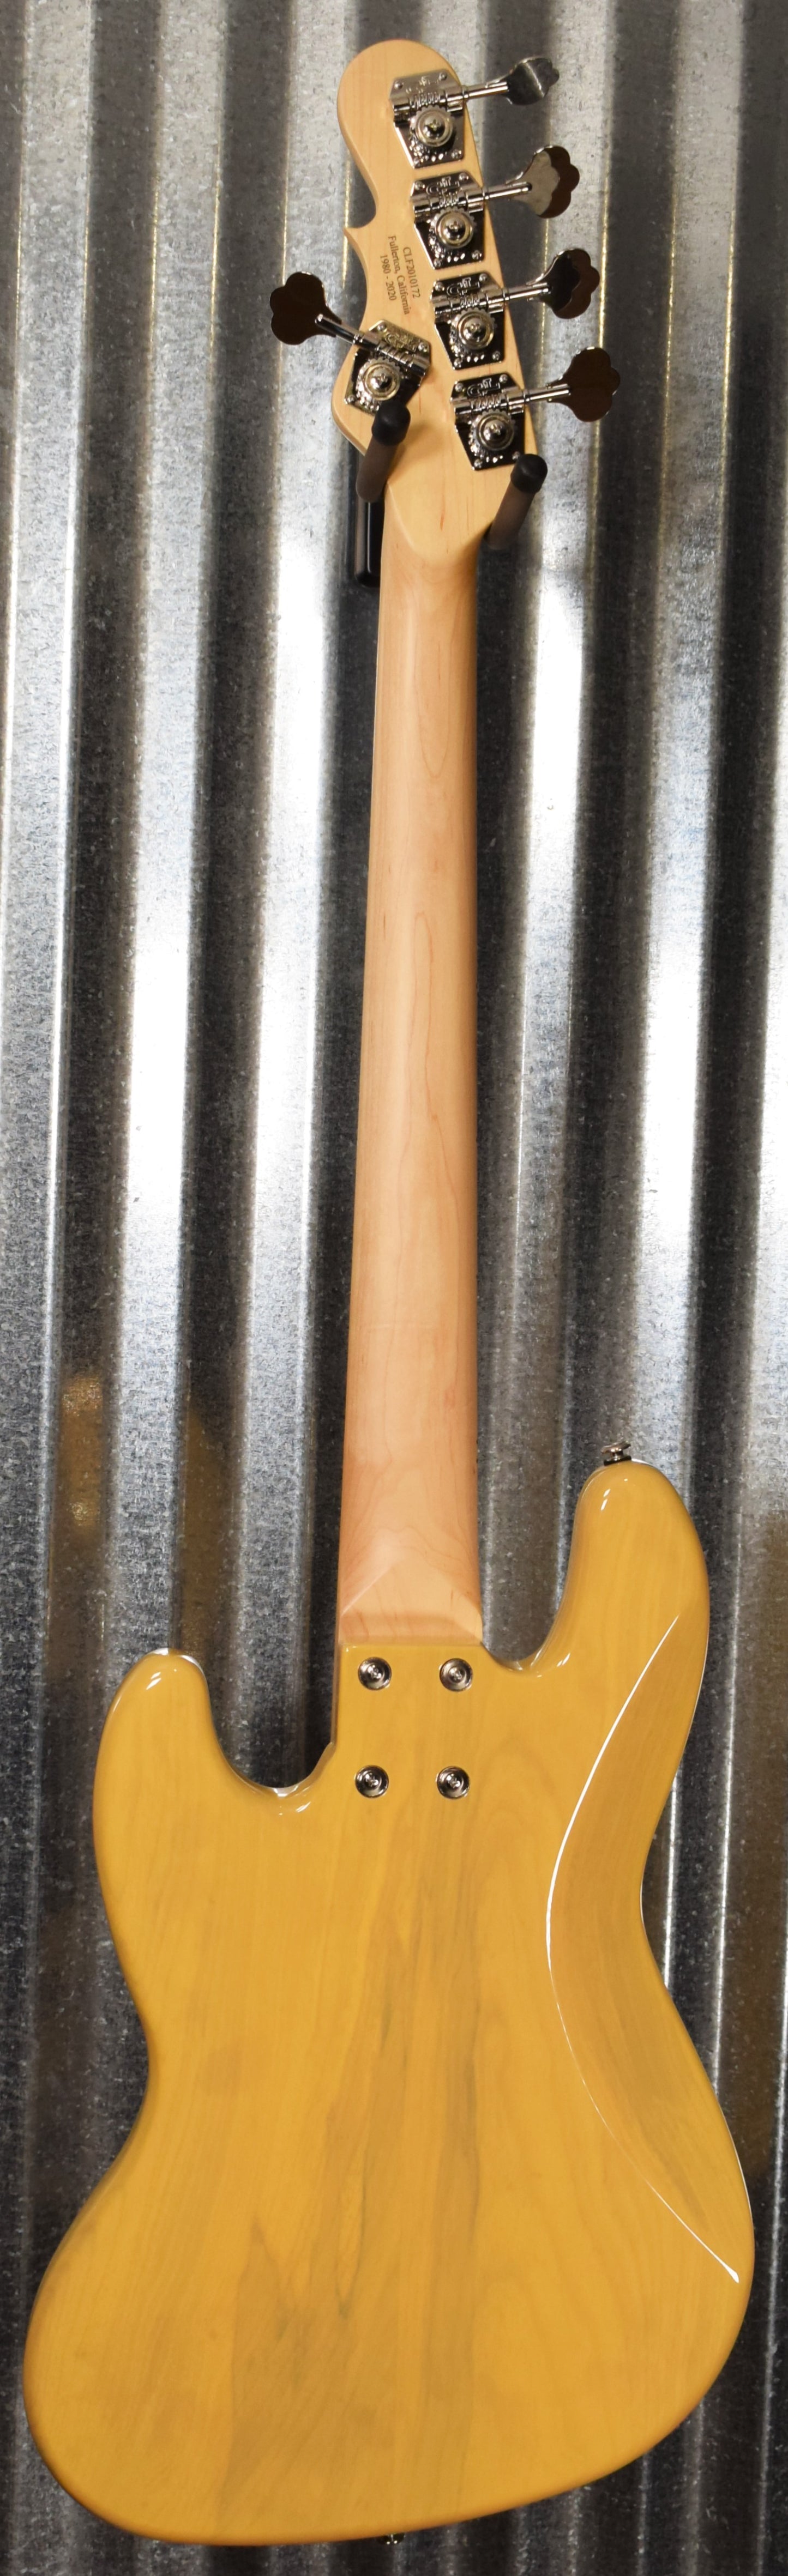 G&L USA JB-5 5 String Jazz Bass Butterscotch Blonde & Case 2020 JB5 #0172